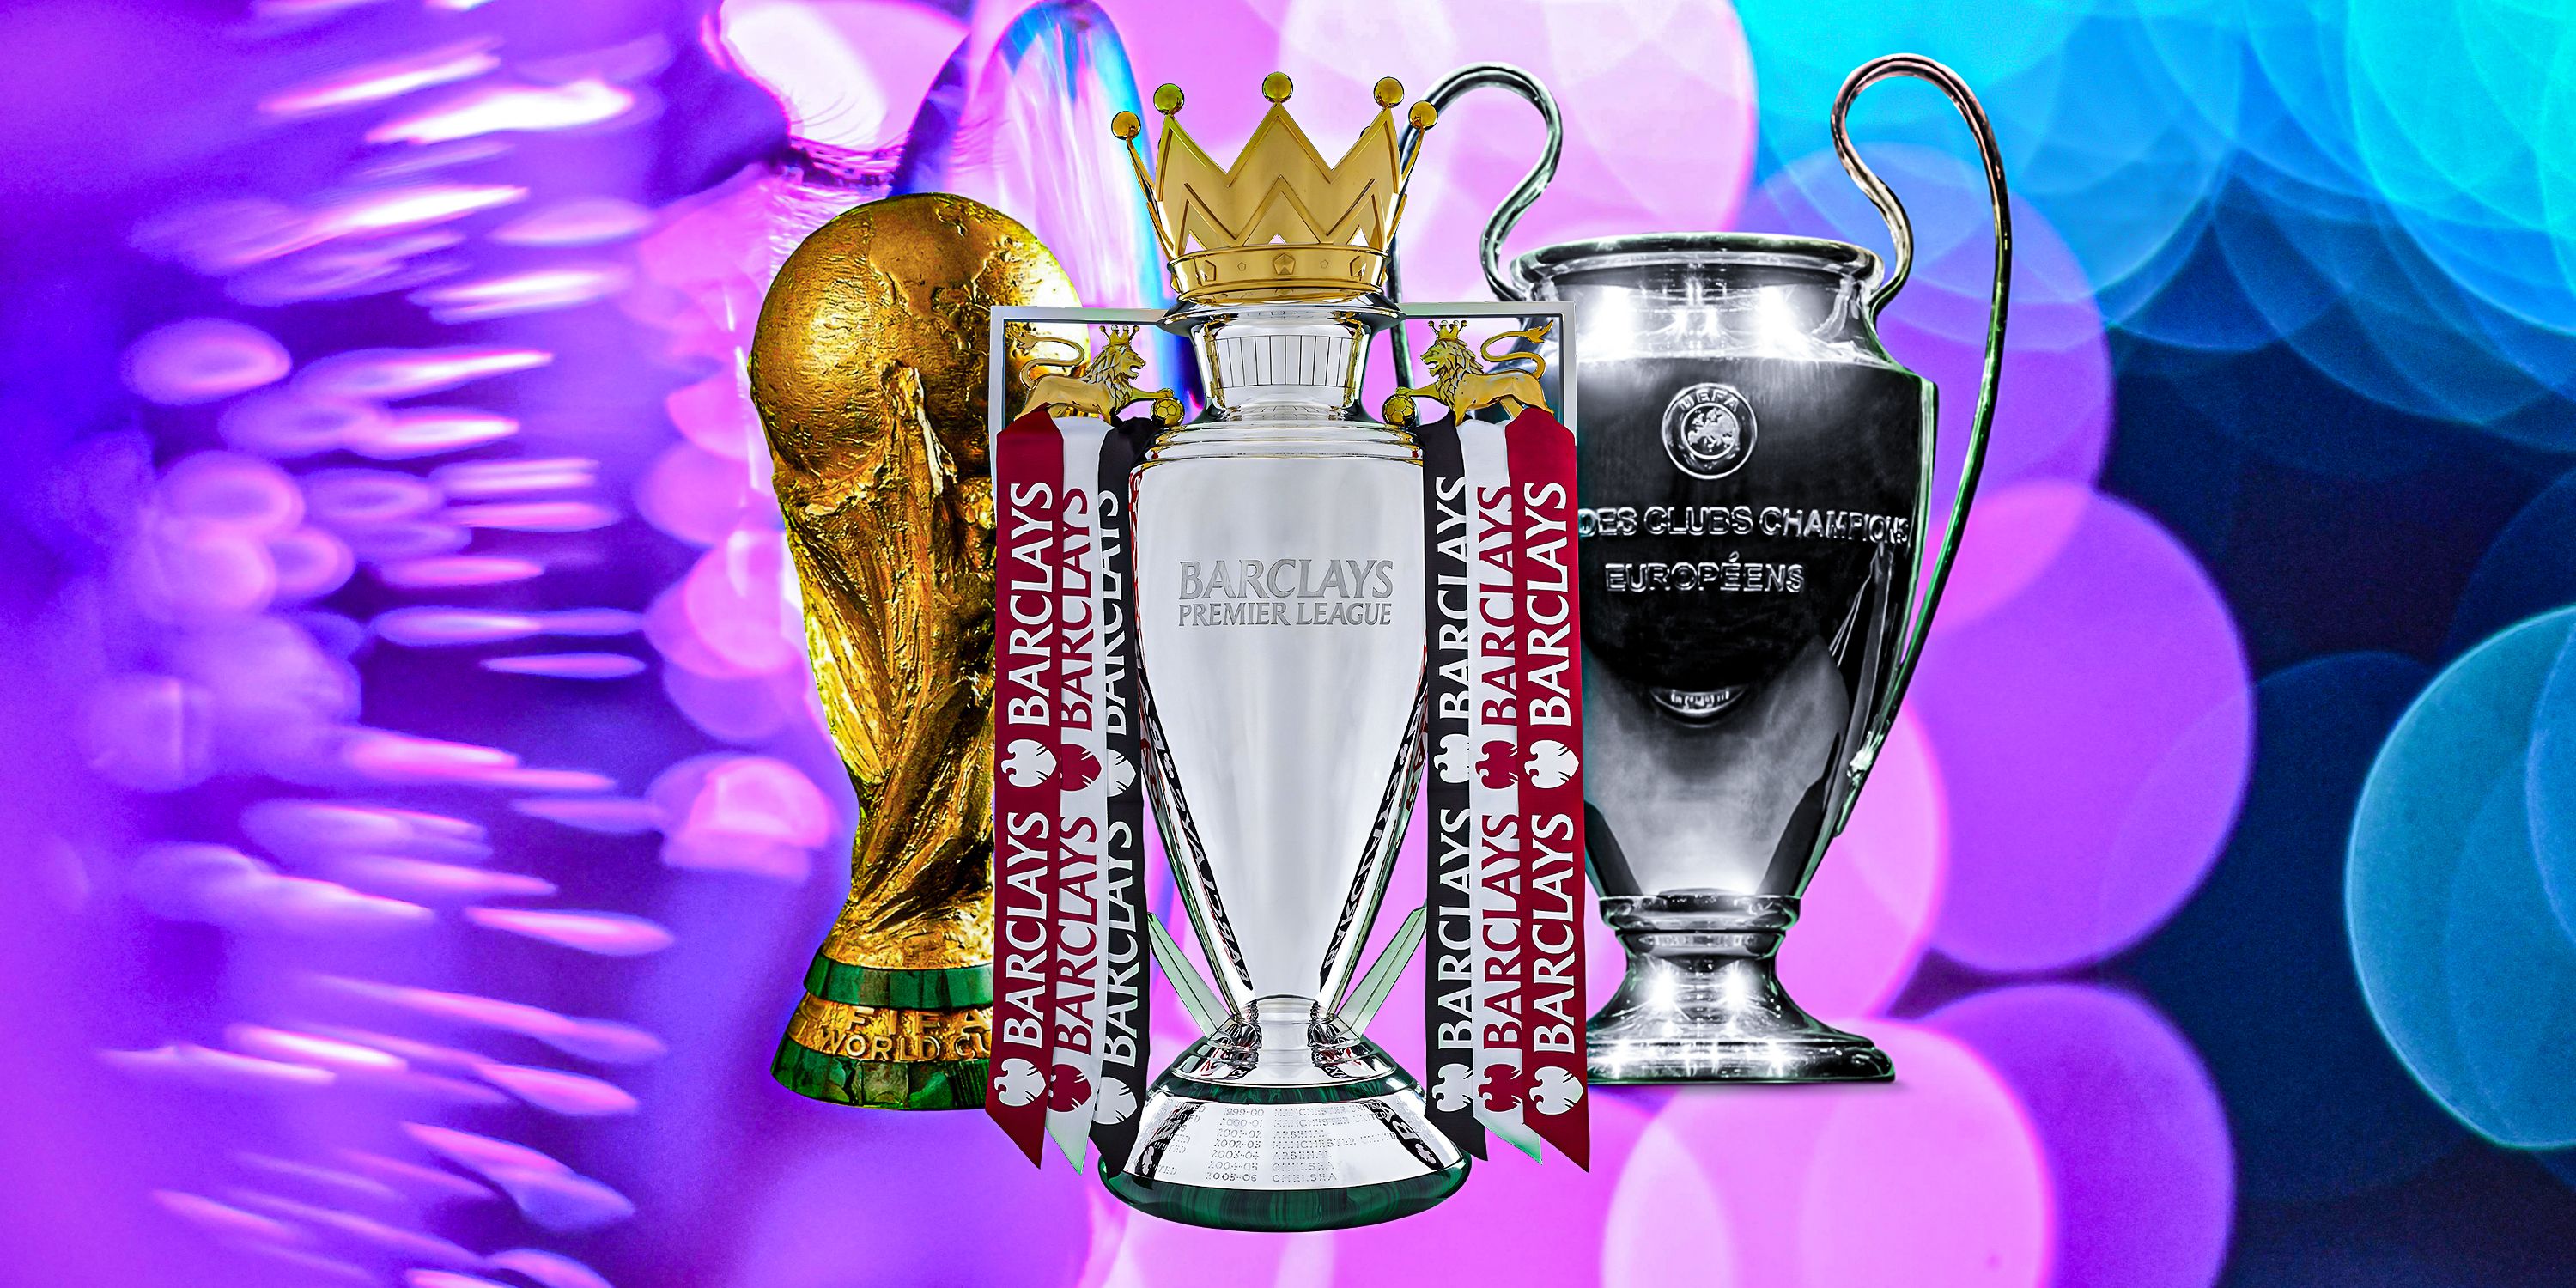 Premier League, World Cup and Champions League trophies